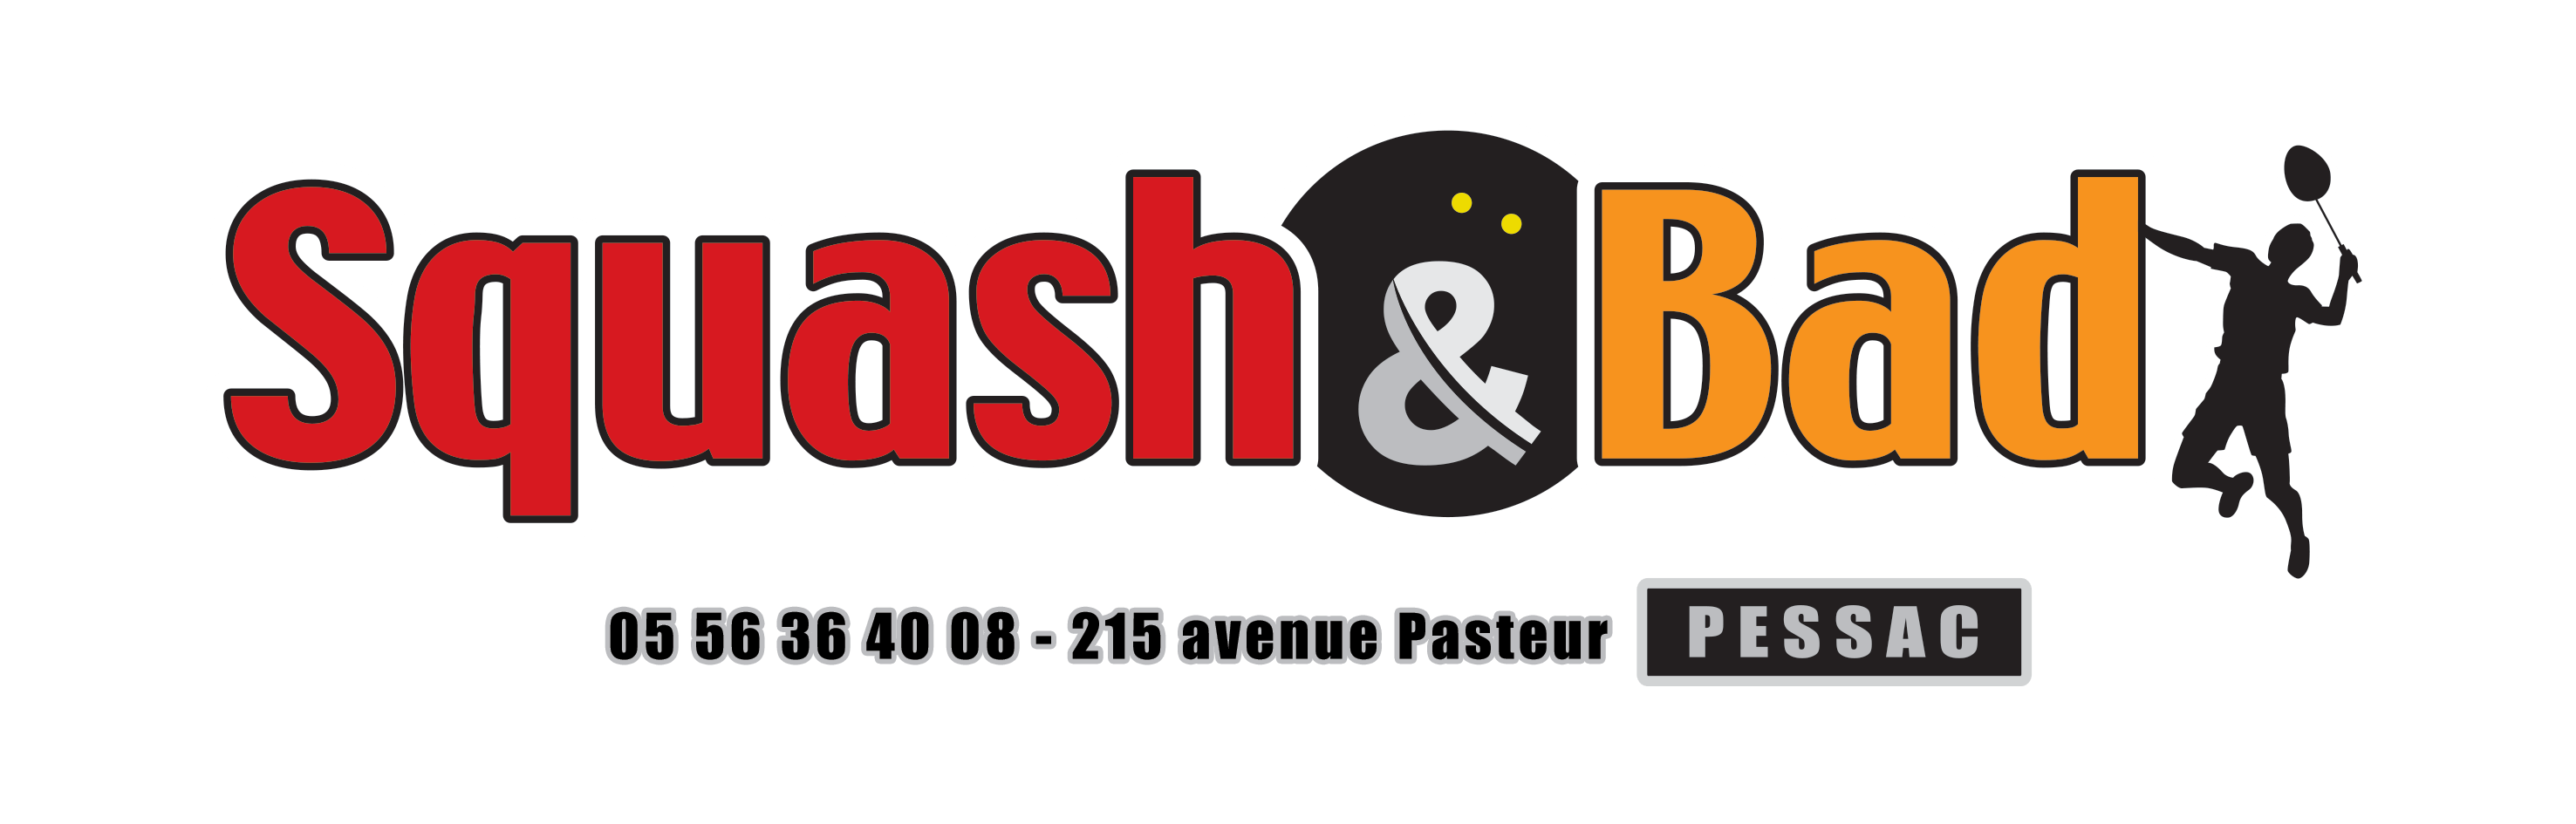 Logo Squash&Bad de Pessac